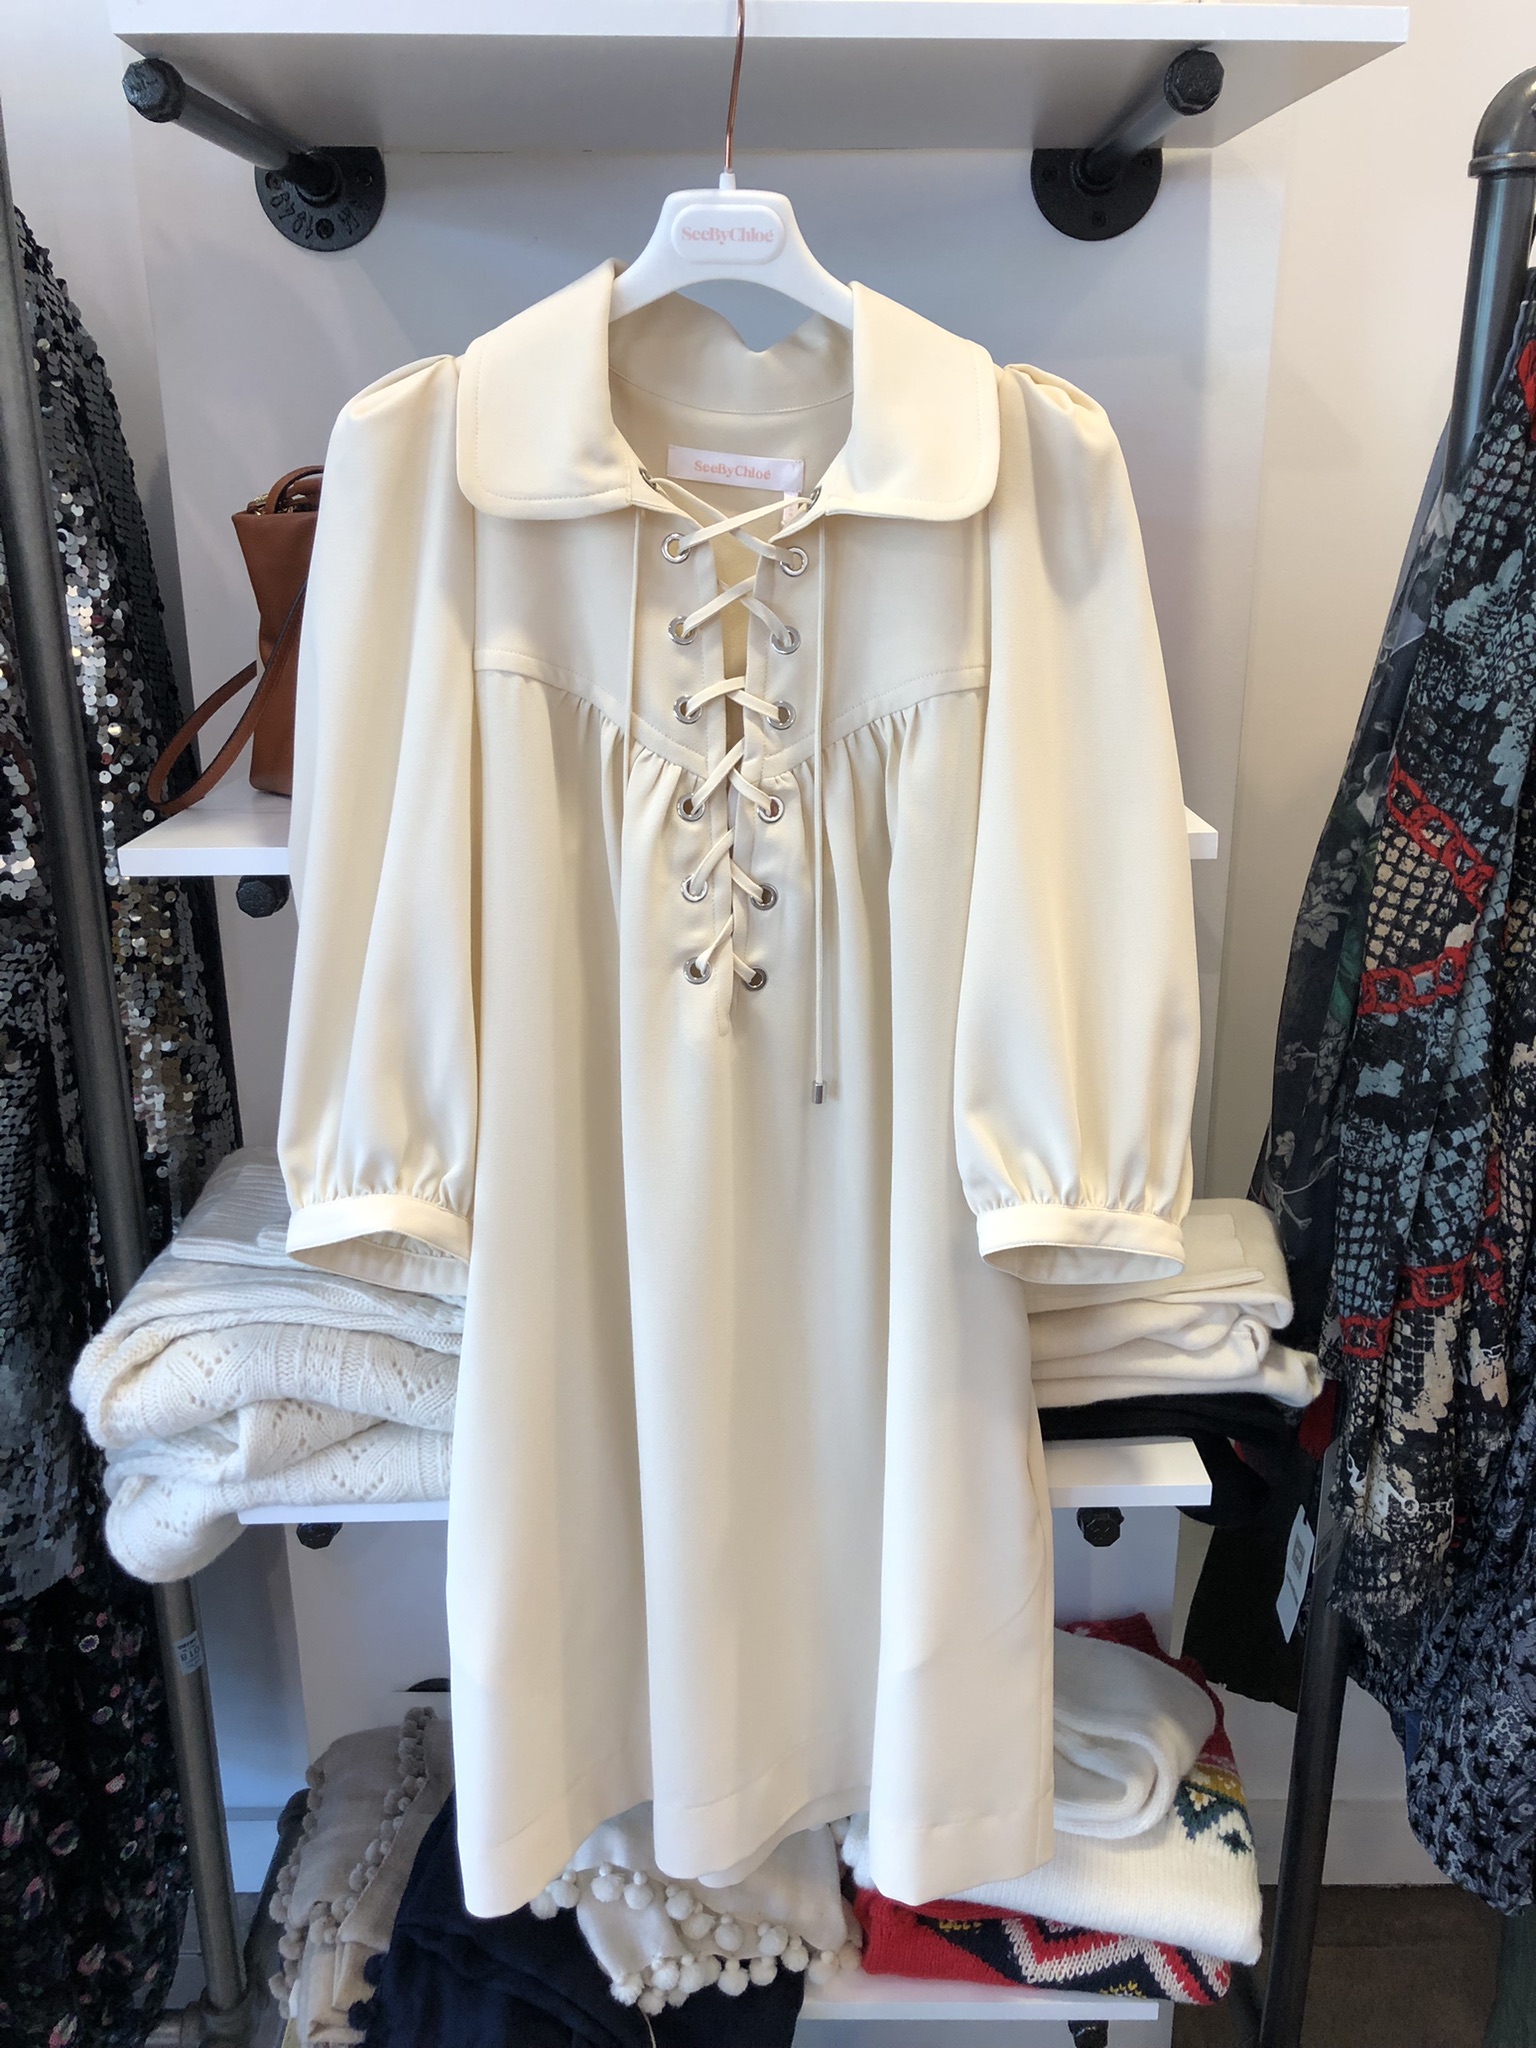 mashpee-shopping-cape-cod-white-blouse